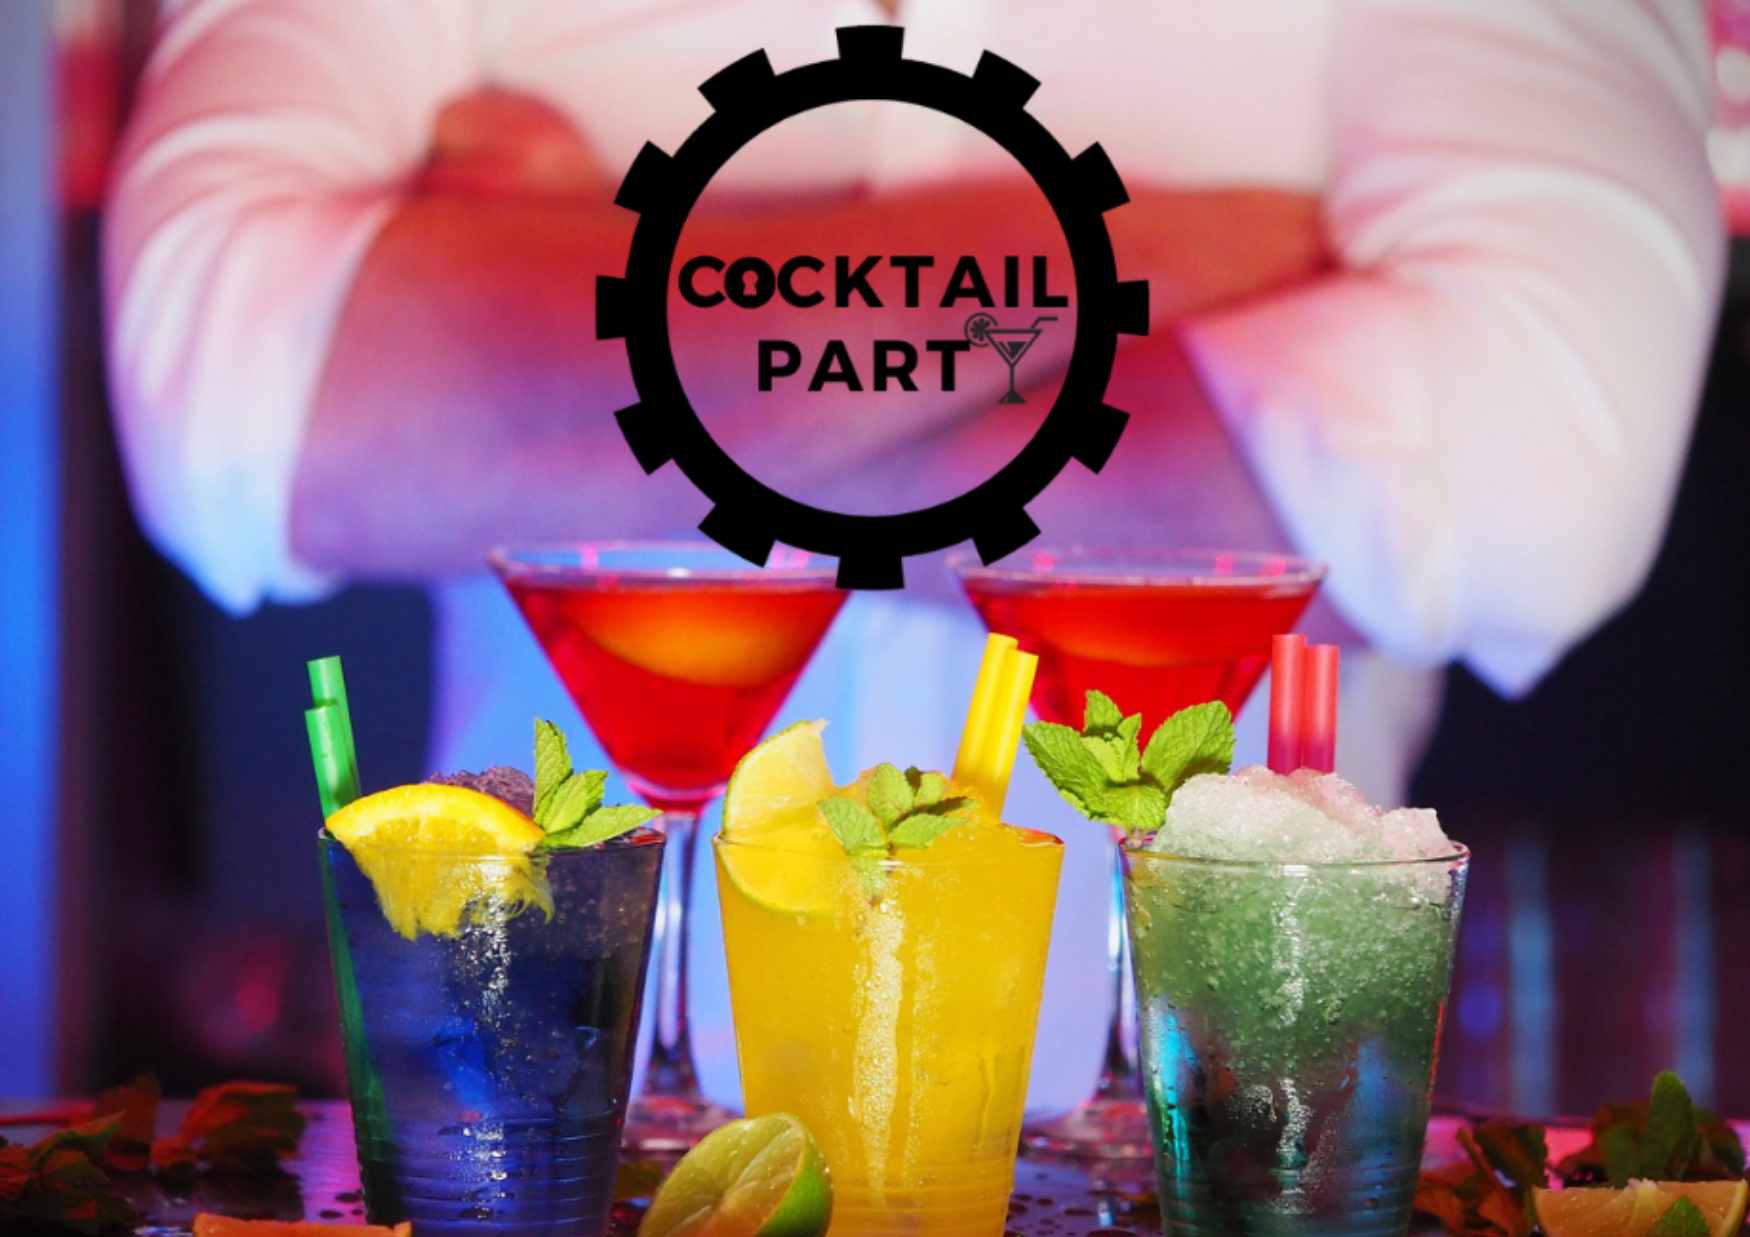 Cocktail Party, jeu qui mixe escape game et cocktail